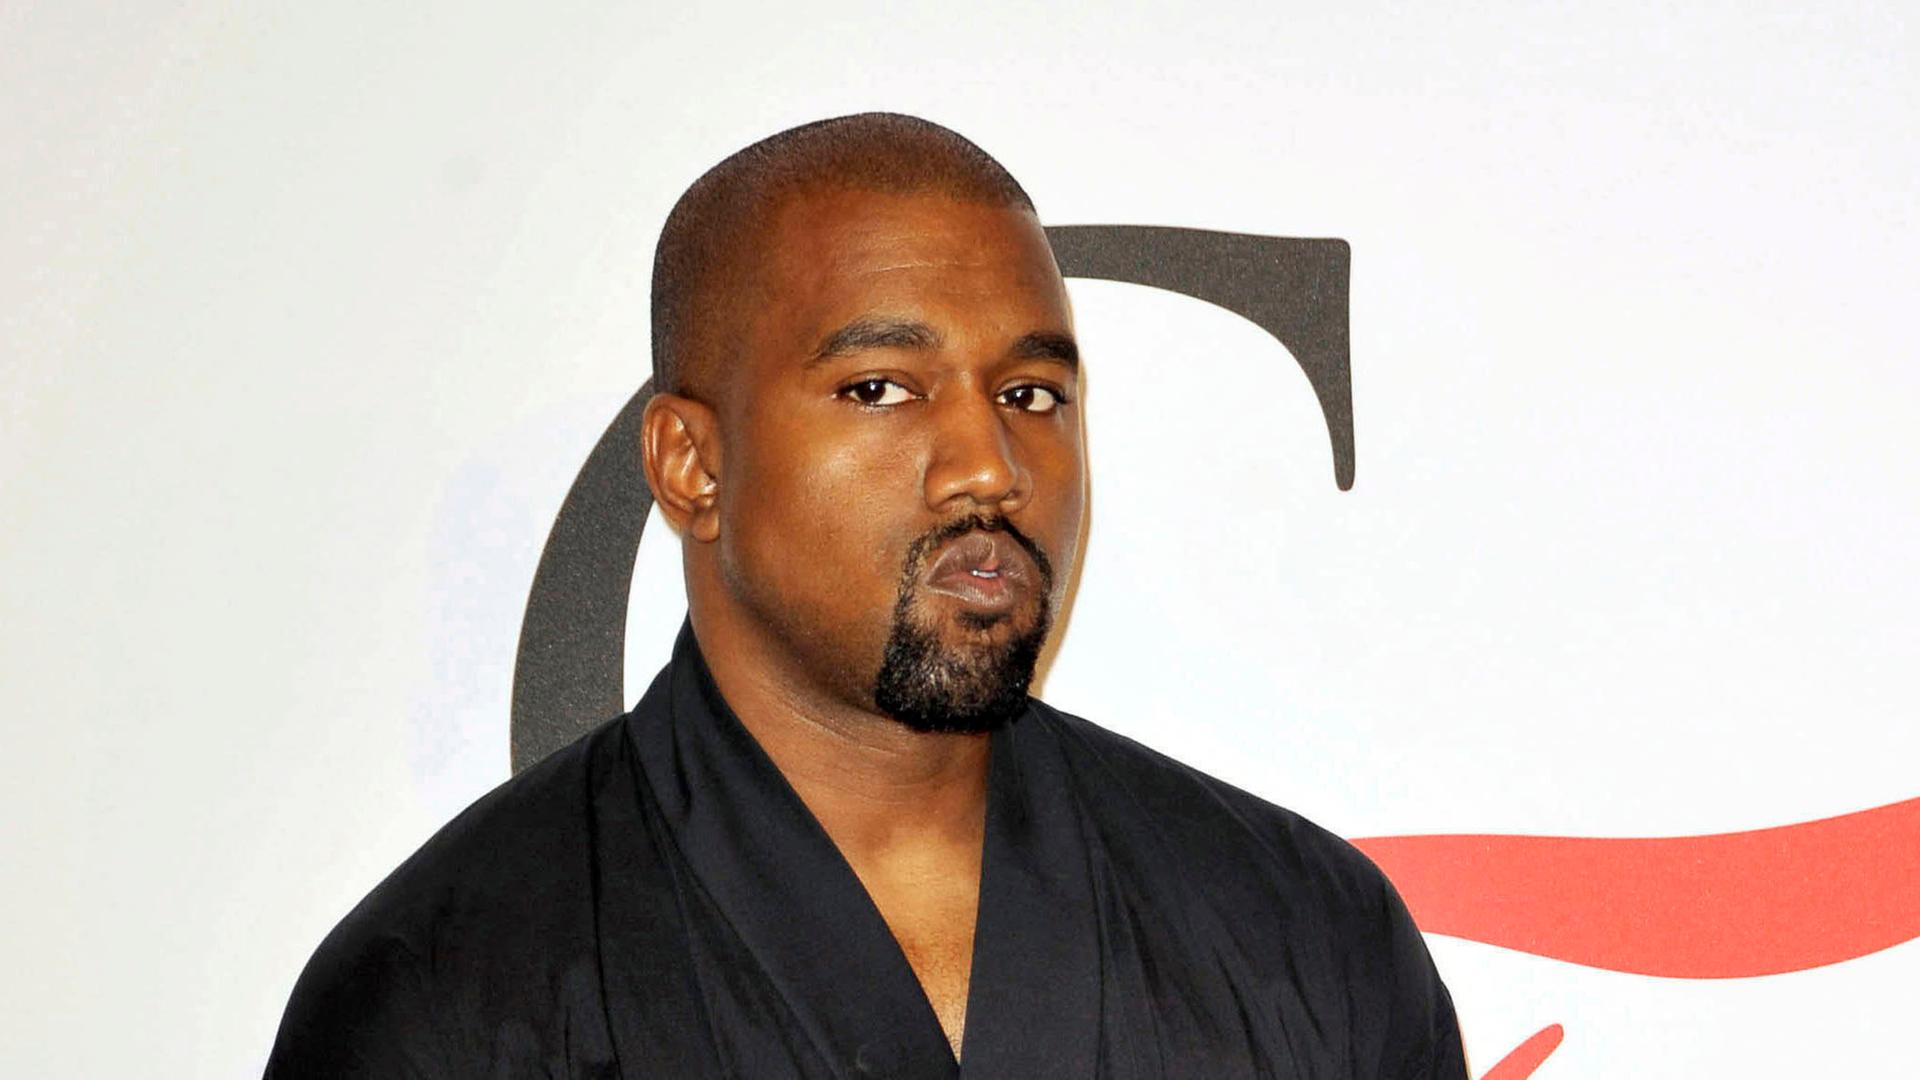 Der Rapper Kanye West schaut kritisch in die Kamera, er steht mit einem schwarzen Oberteil, das an einen Bademantel erinnert, vor einer weißen Wand.